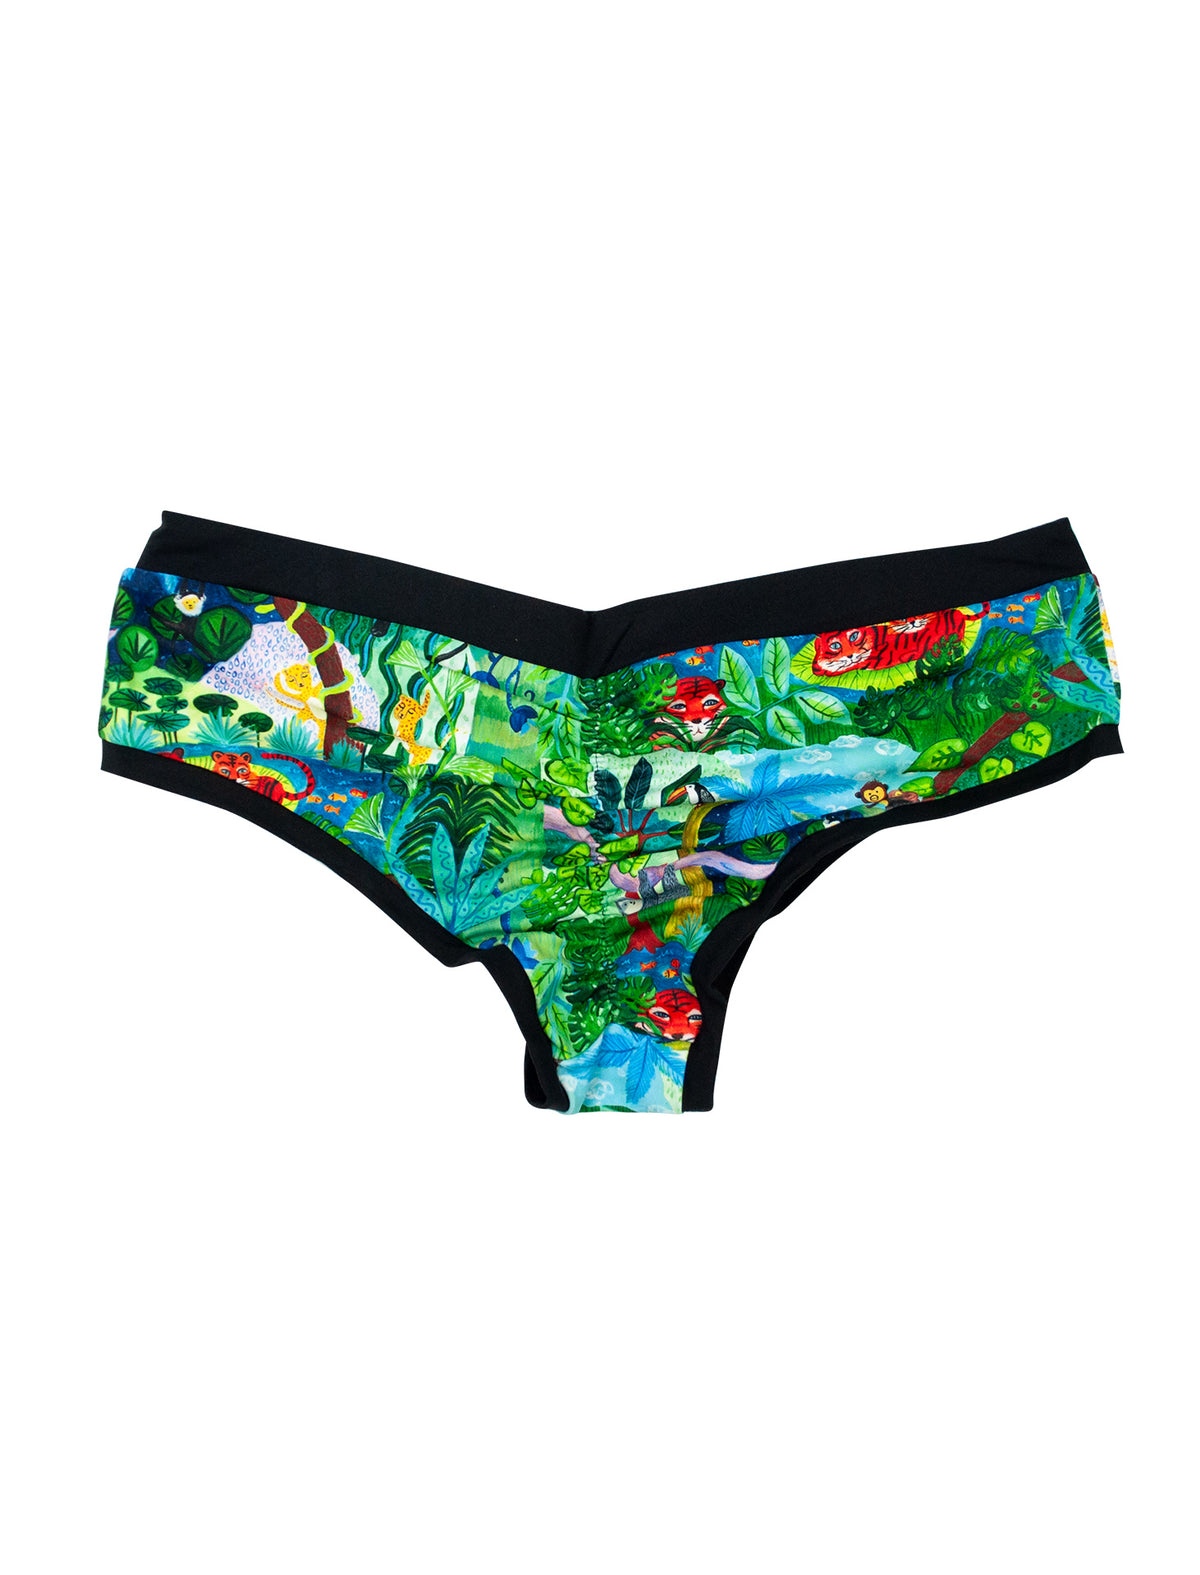 In The Jungle Classic Scrunch Butt Shorts